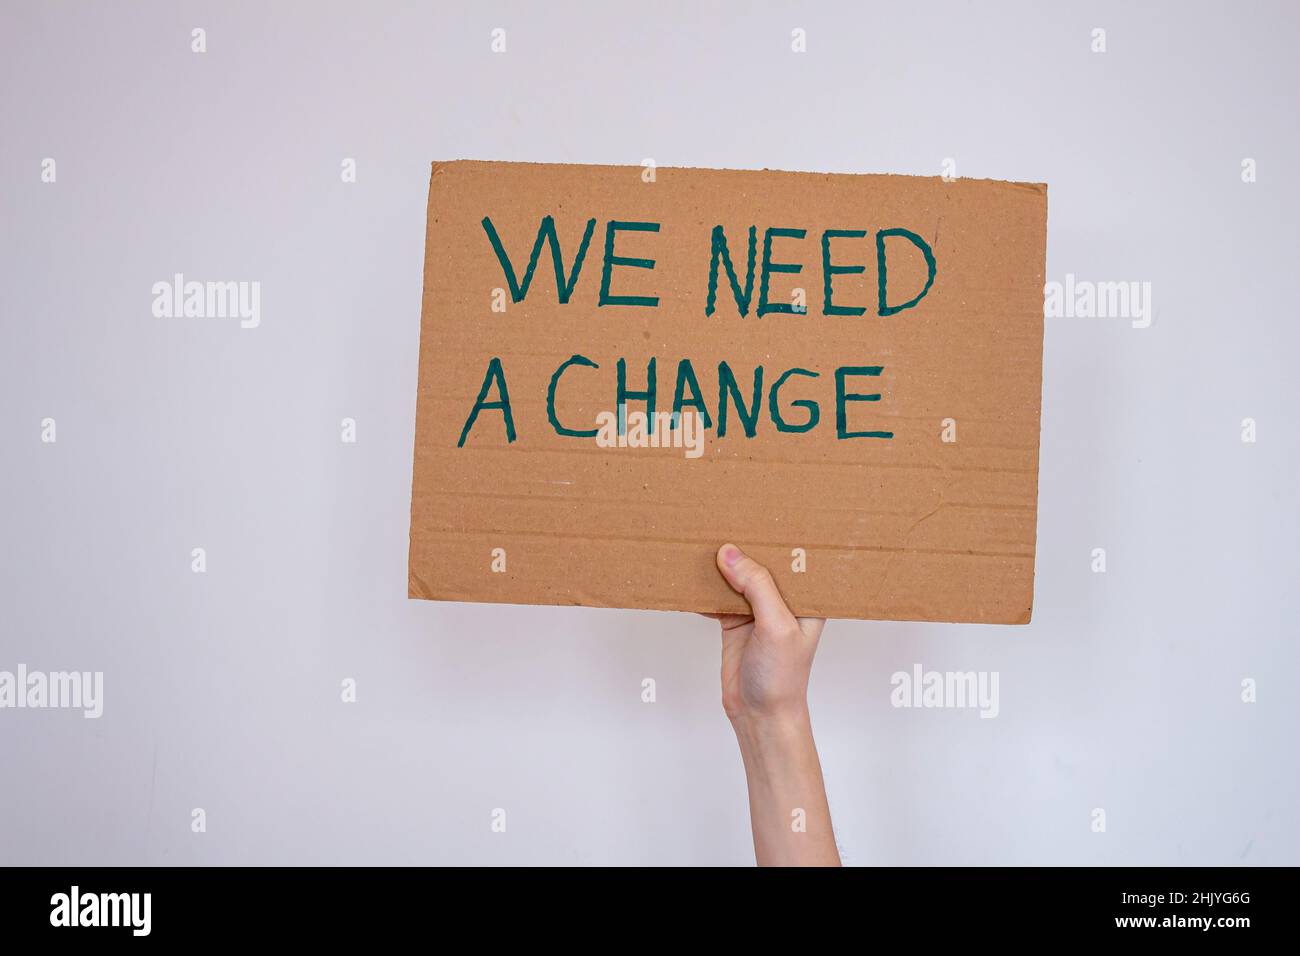 Handgehaltener Karton mit der Aufschrift „We need a change“ auf grauem Wandhintergrund. Sie kann gegen die globale Erwärmung oder Umweltverschmutzung protestieren. Stockfoto